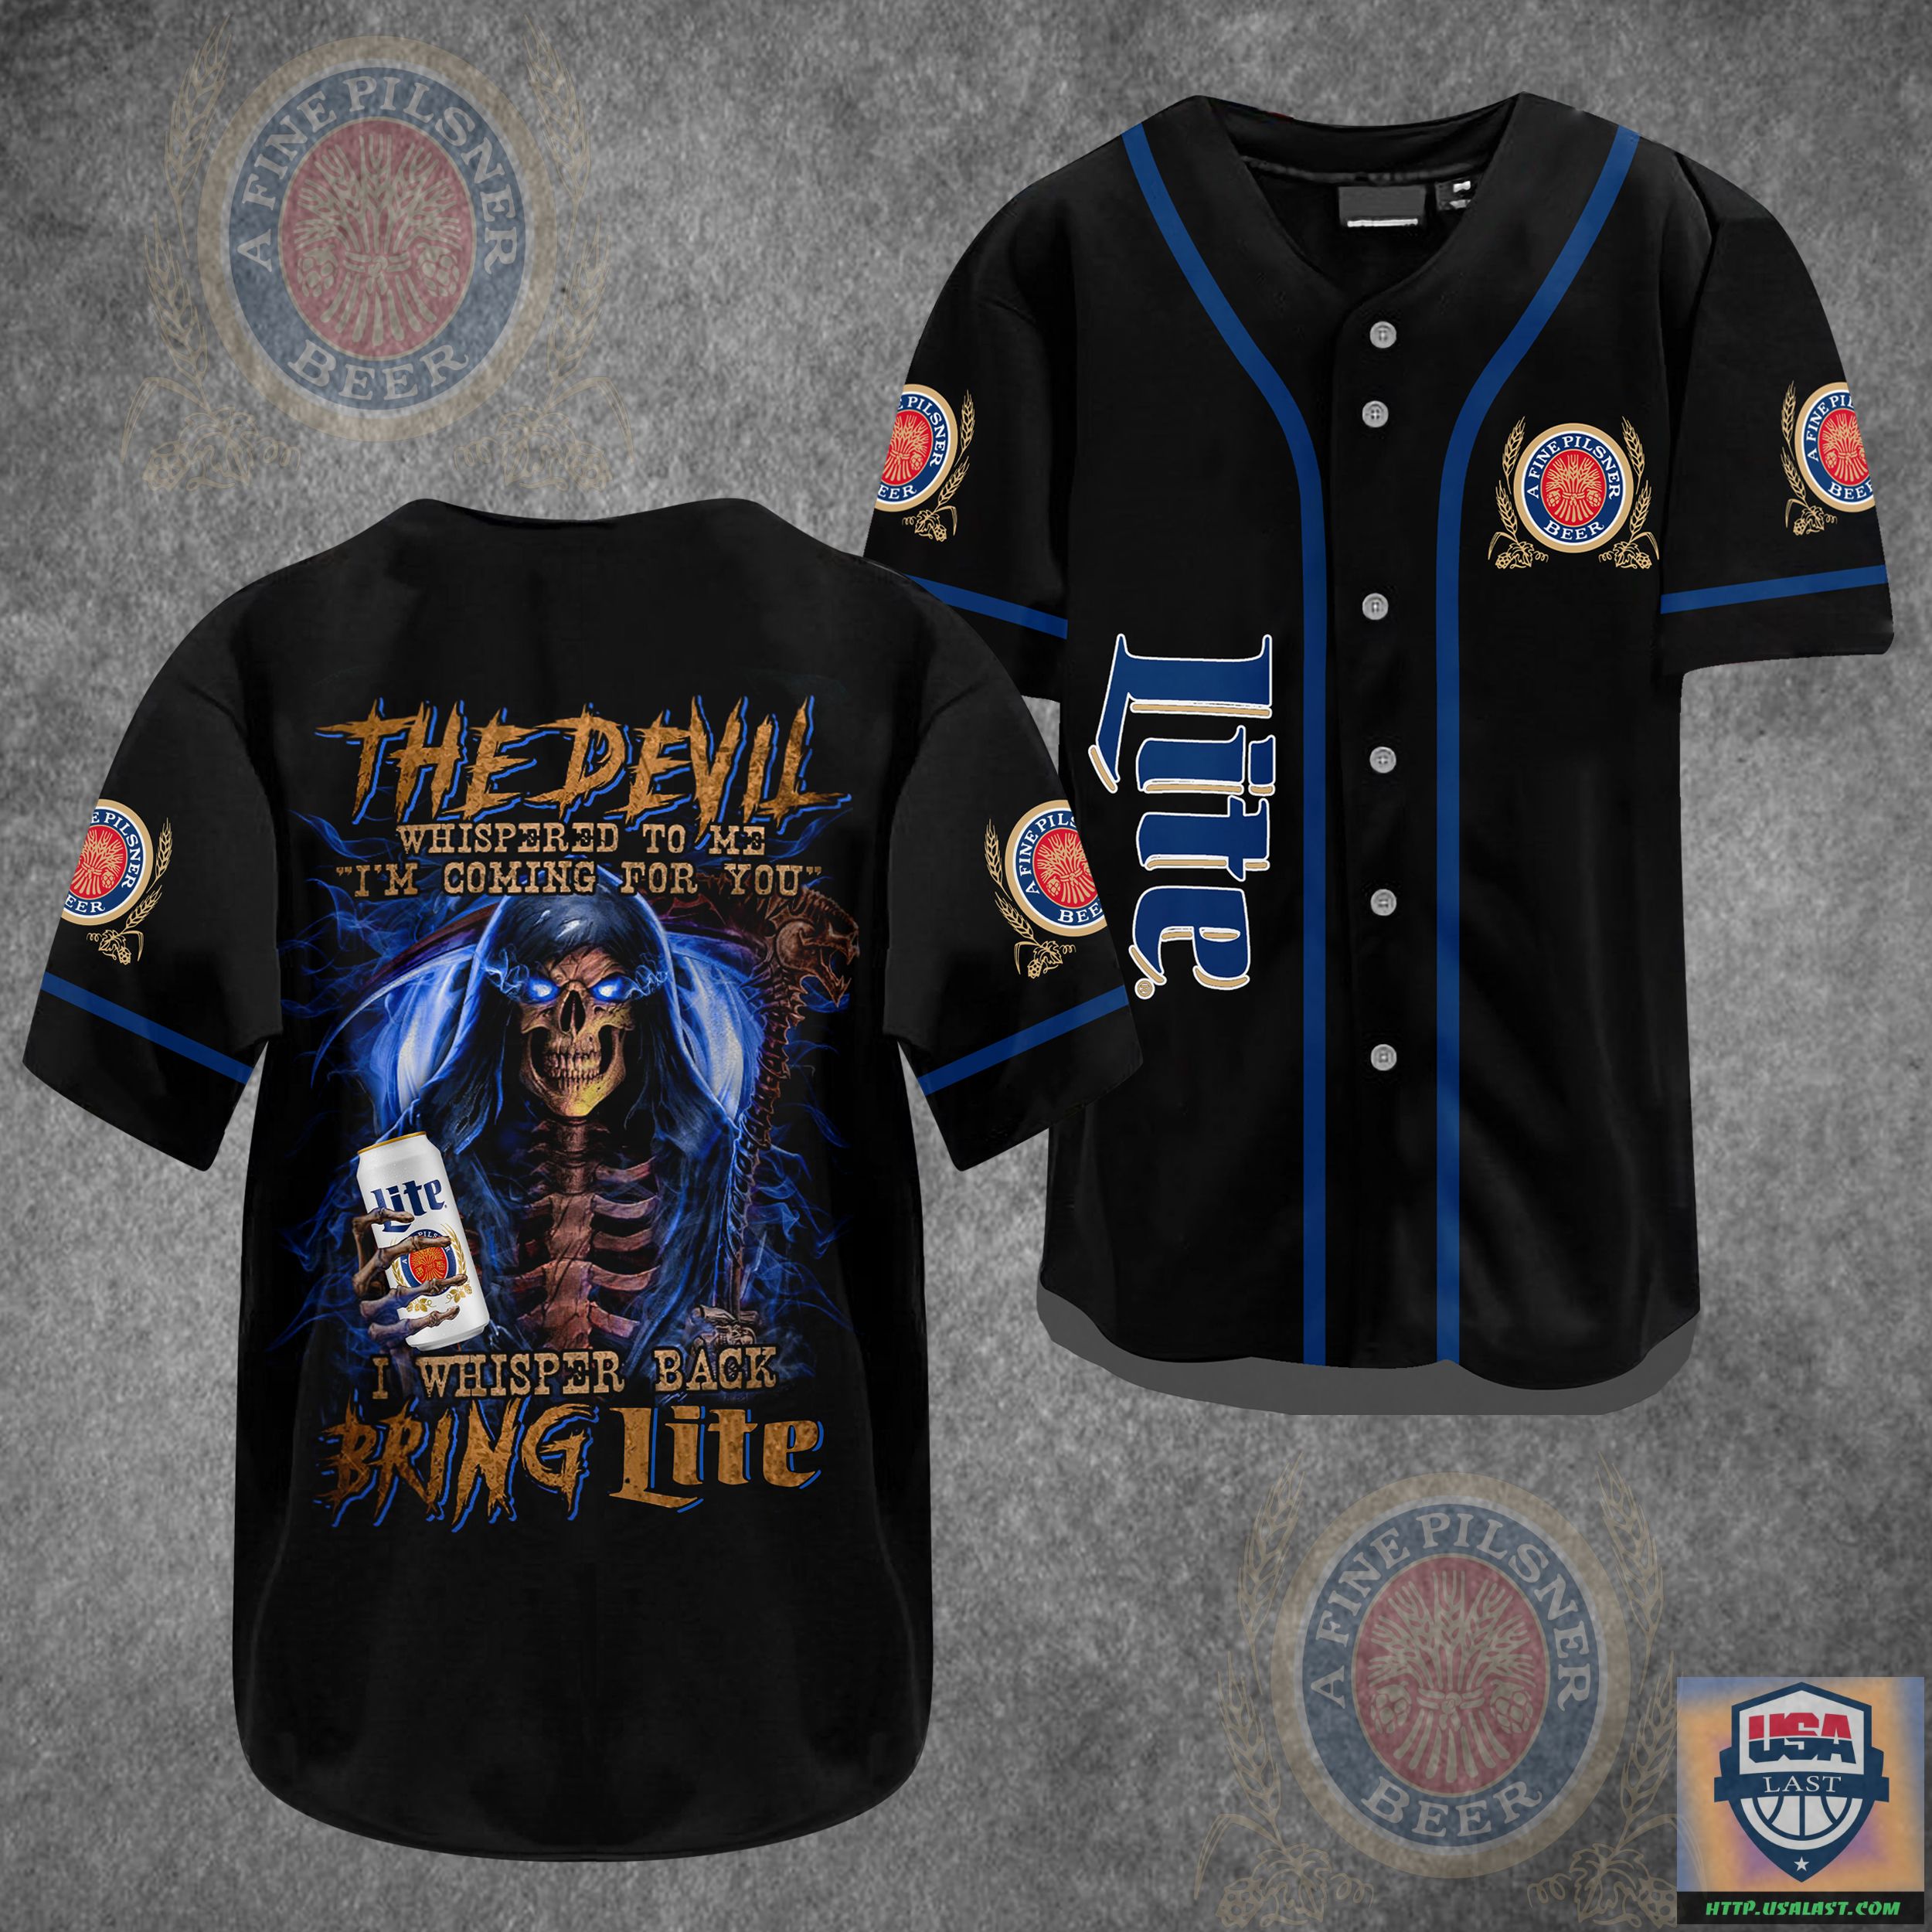 CIIFmwoE-T220722-56xxxThe-Devil-Bring-Miller-Lite-Baseball-Jersey-Shirt.jpg